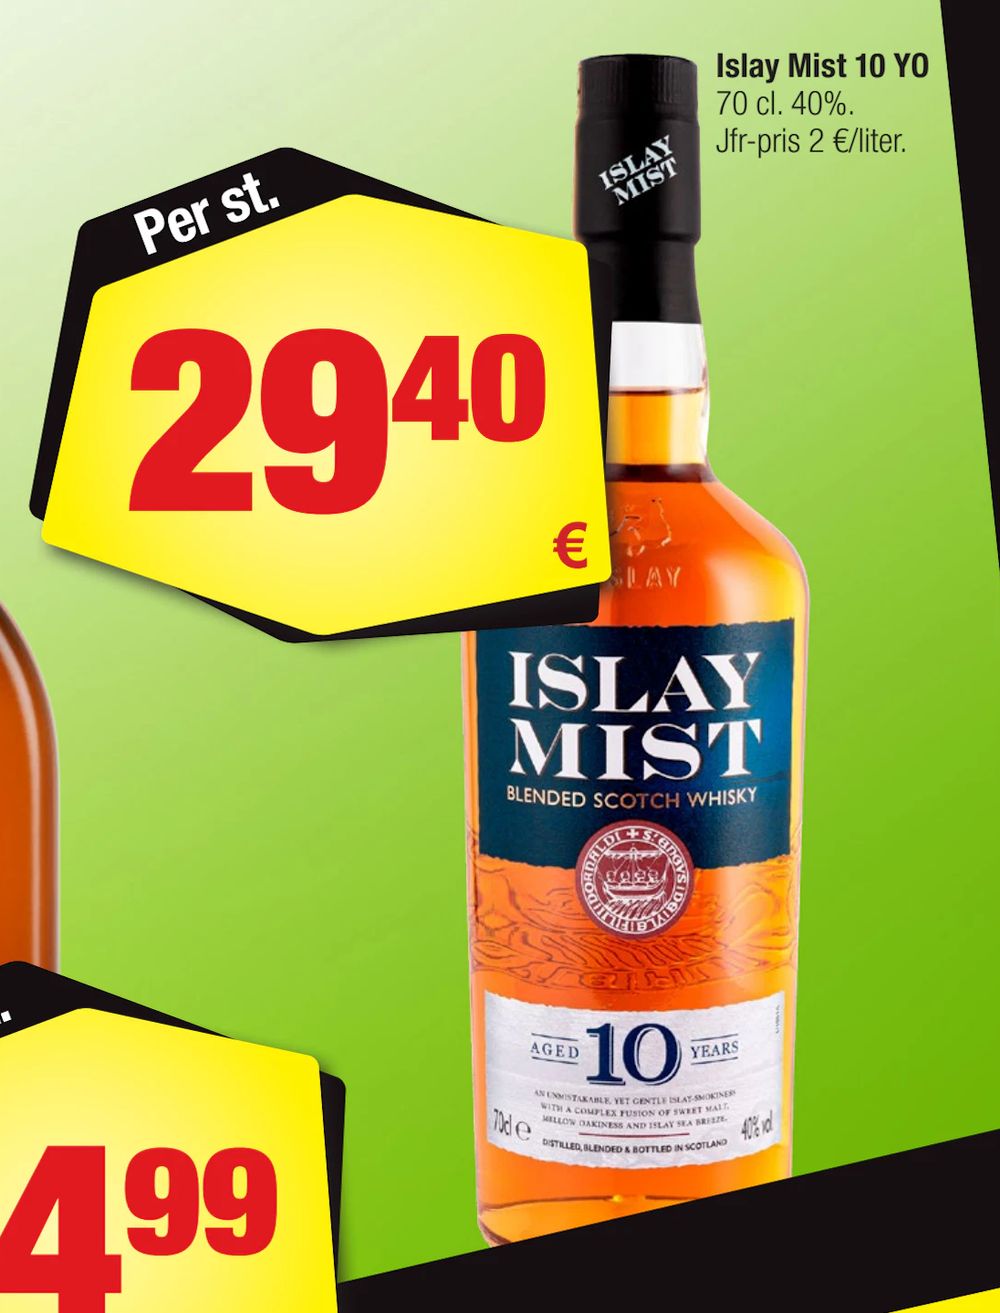 Erbjudanden på Islay Mist 10 YO från Calle för 29,40 €